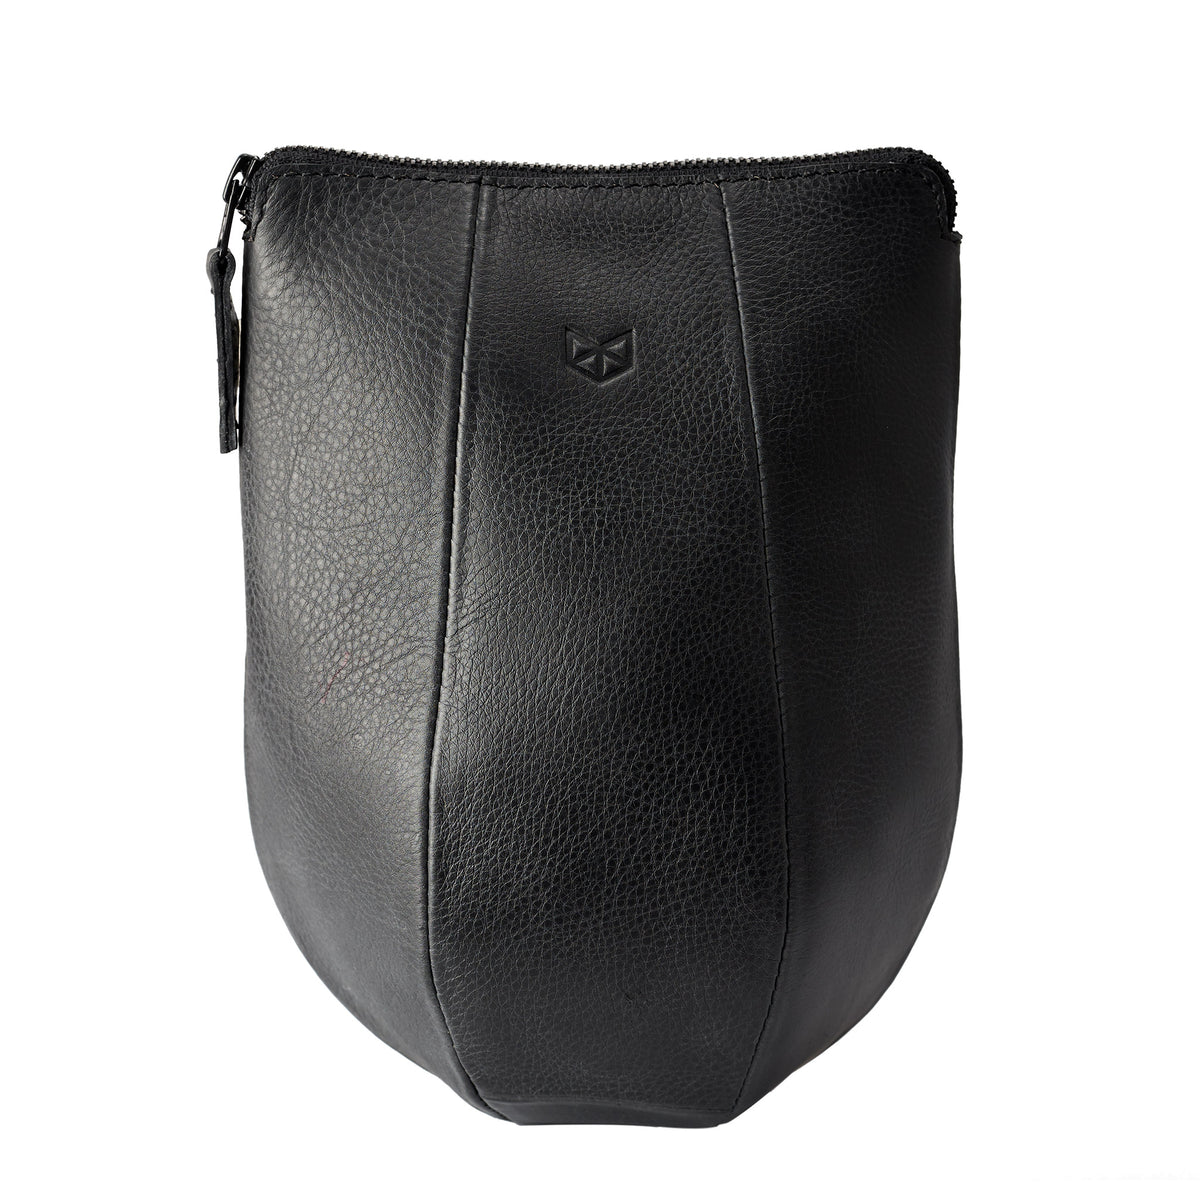 Black leather boxer dopp kit for men. Custom groomsmen gifts. Travel bag for men